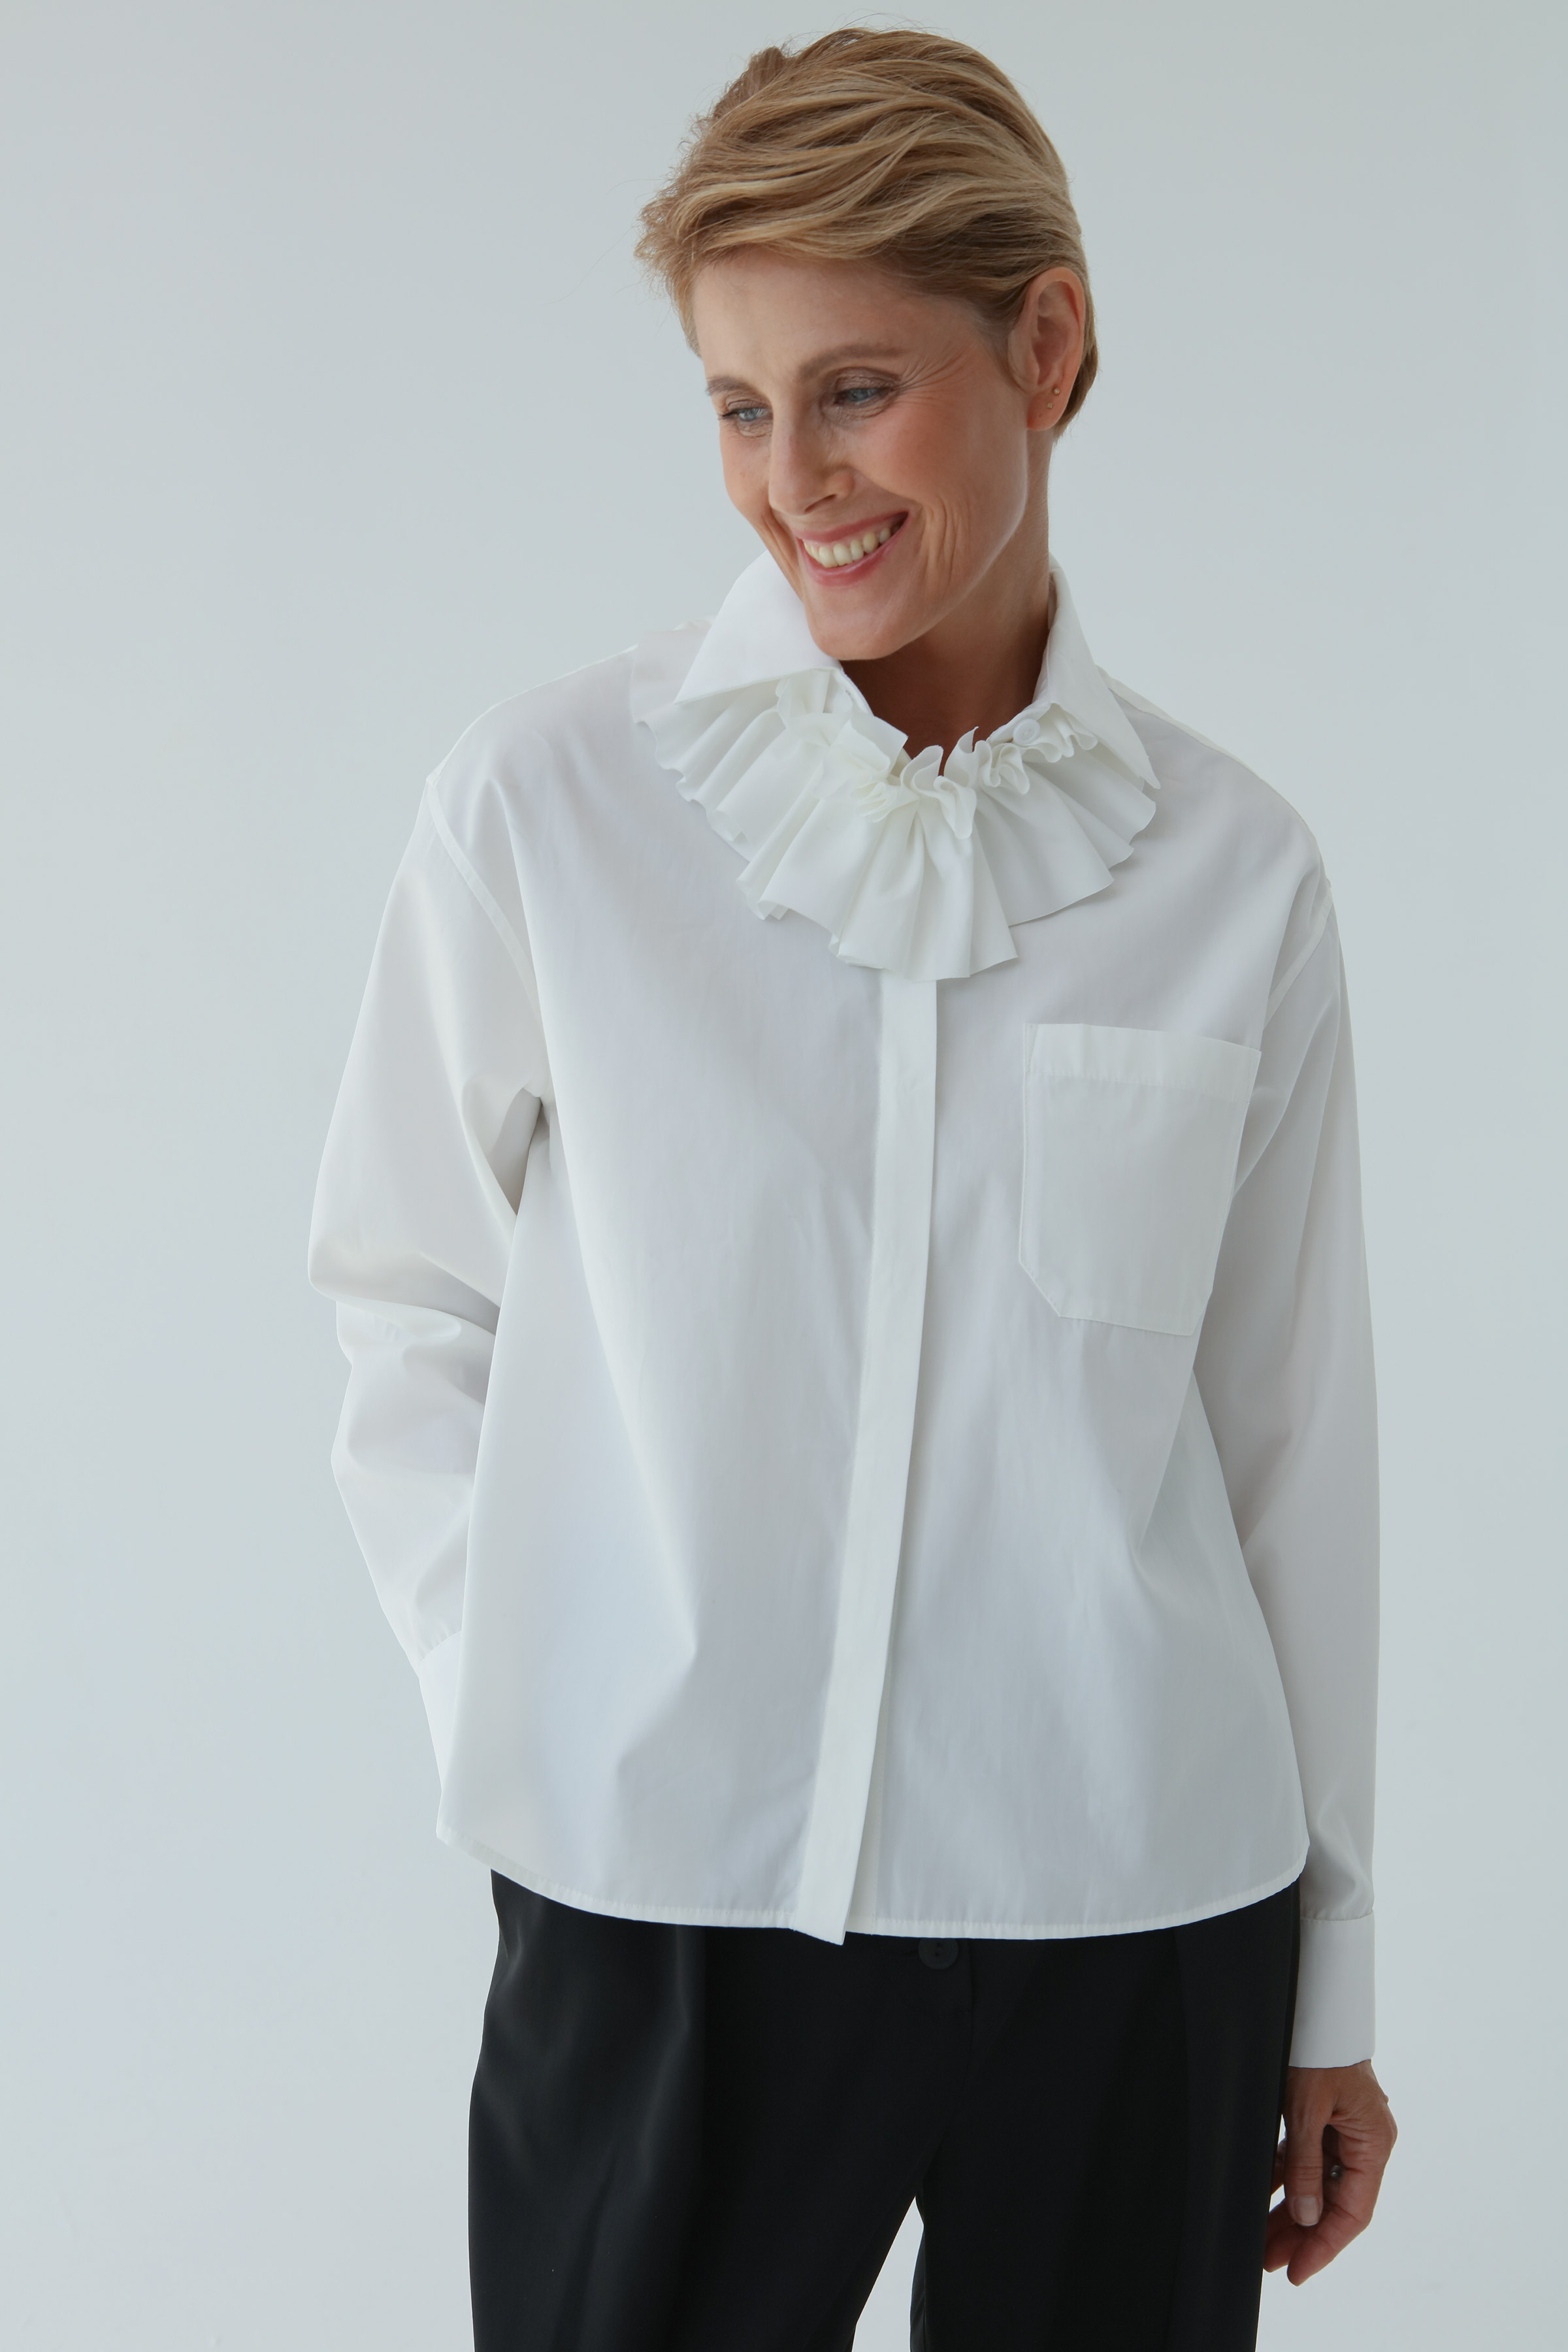 Блуза рубашка с декором 03 Кварц (quartz) от Lesel (Лесель)! Заказывайте по ✆ 8 (800) 777 02 37